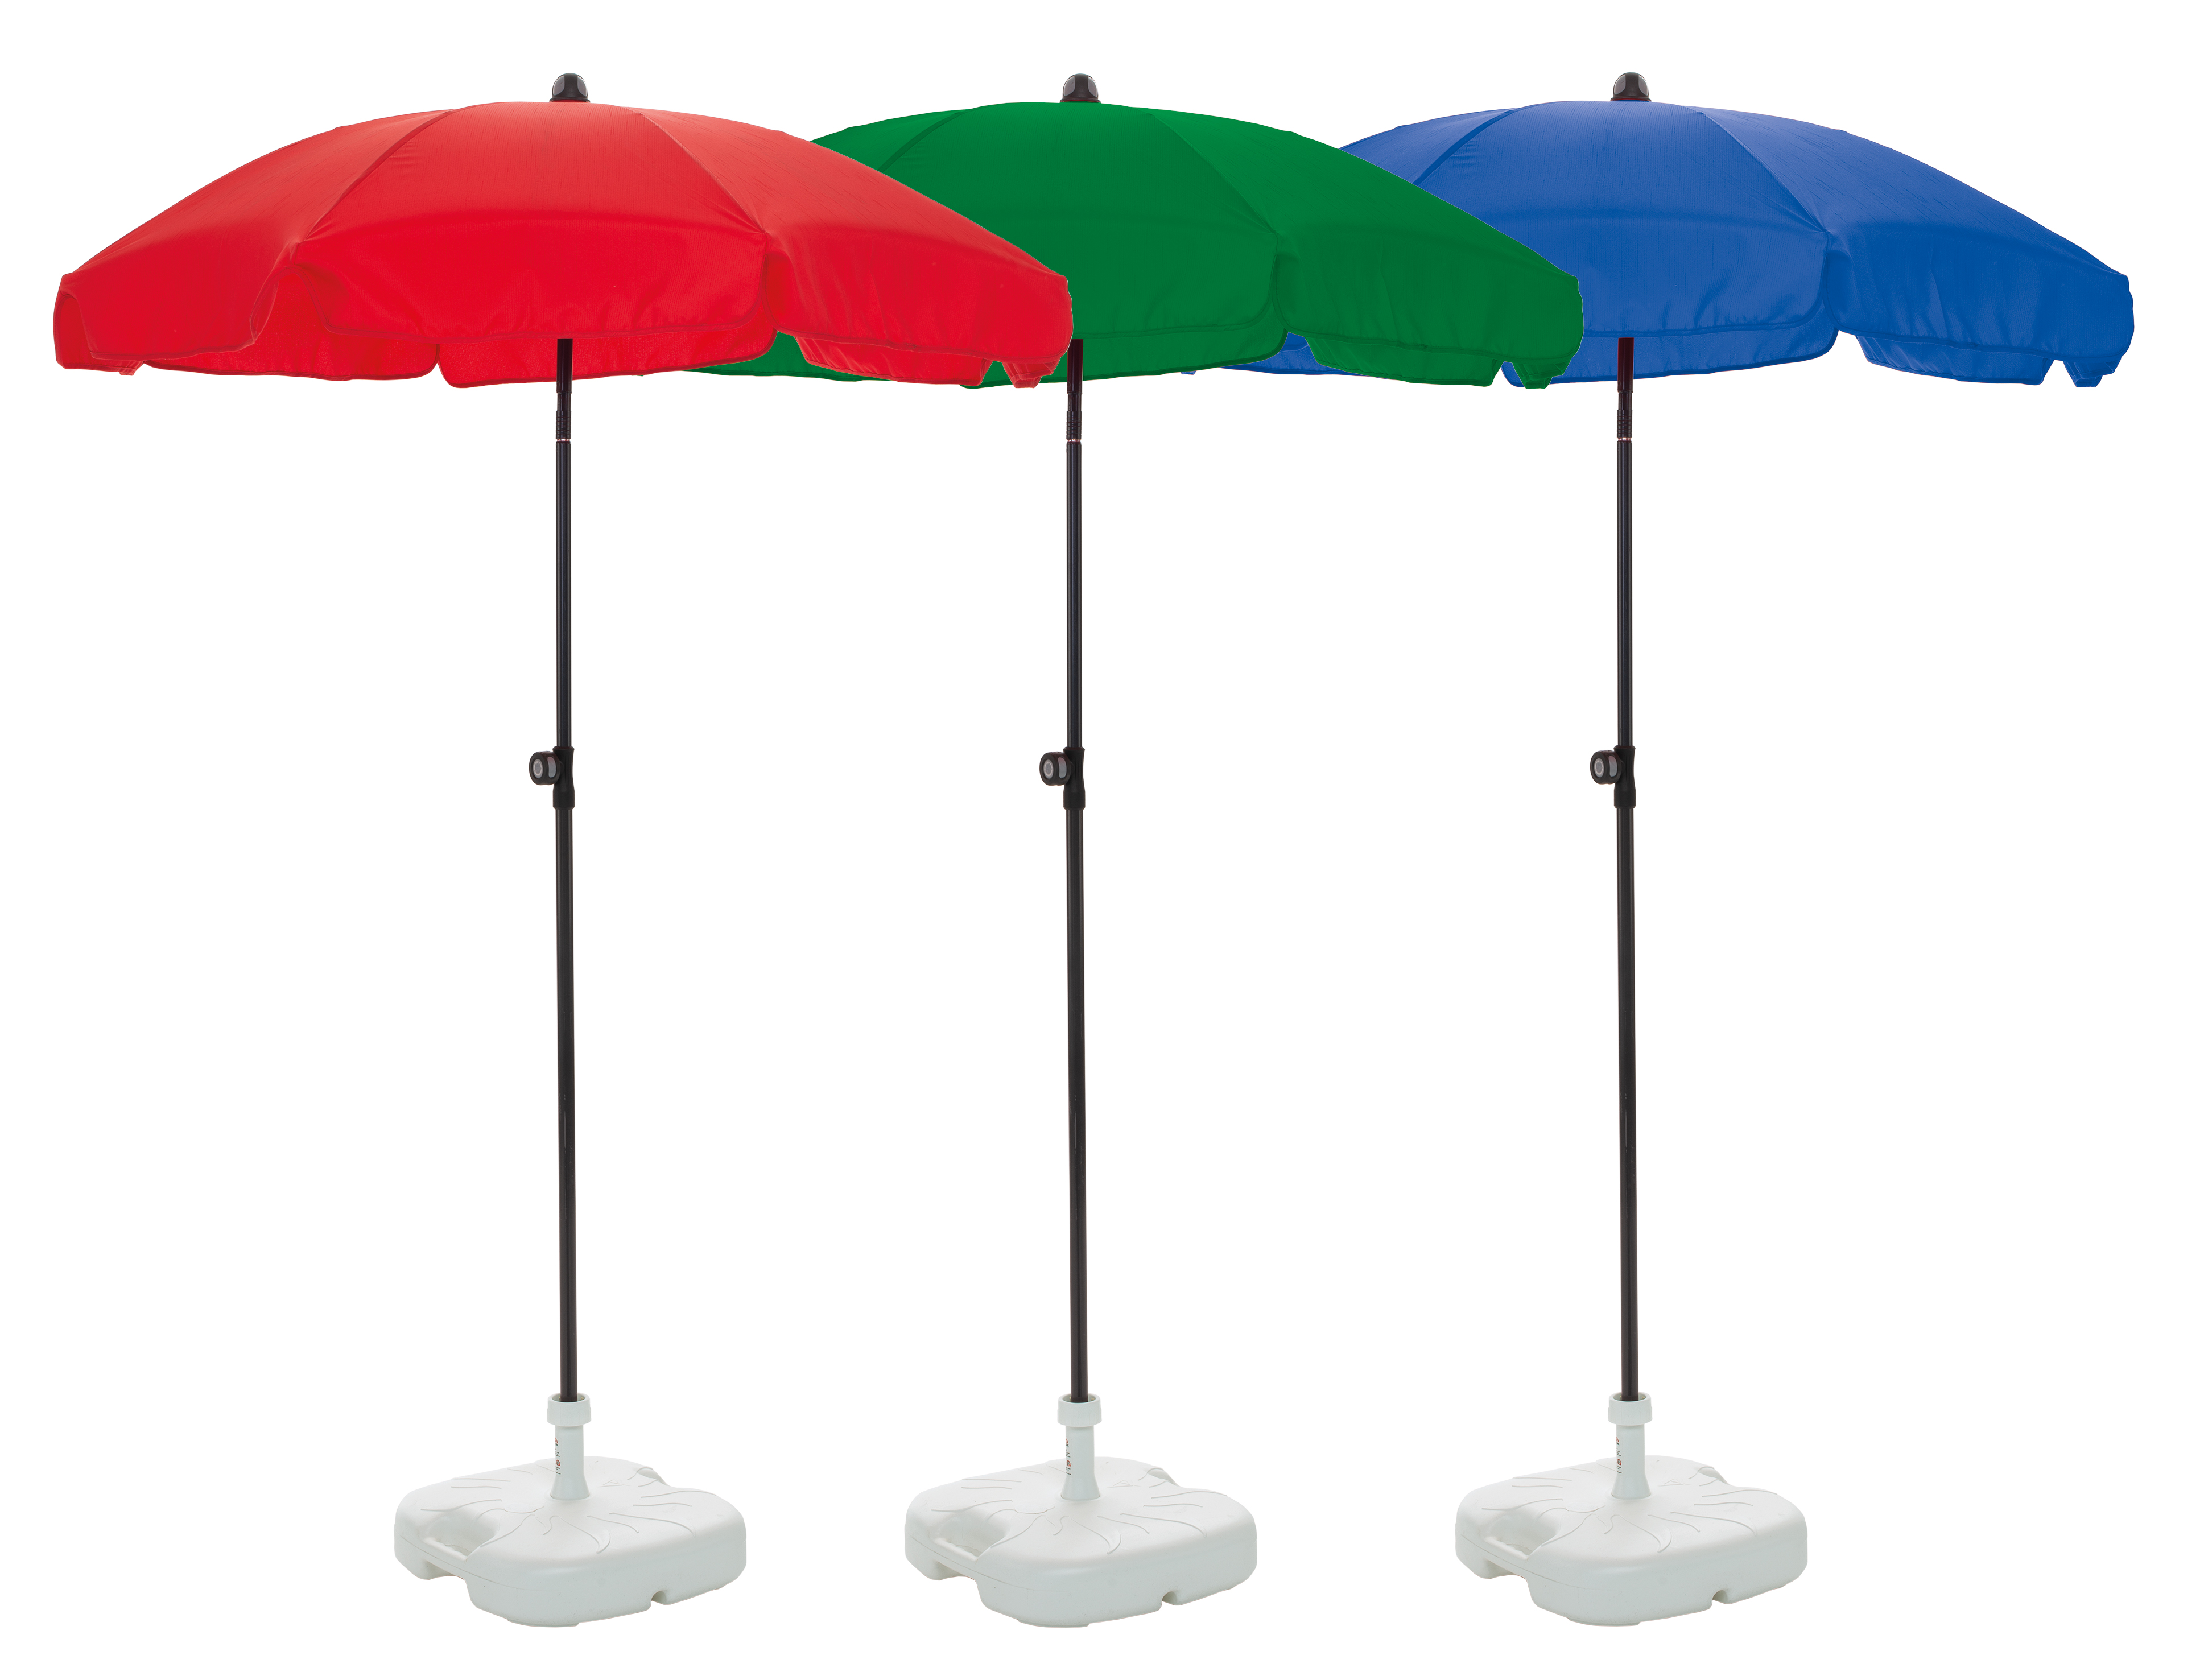 Umbrella Nuovo in 3 different colors